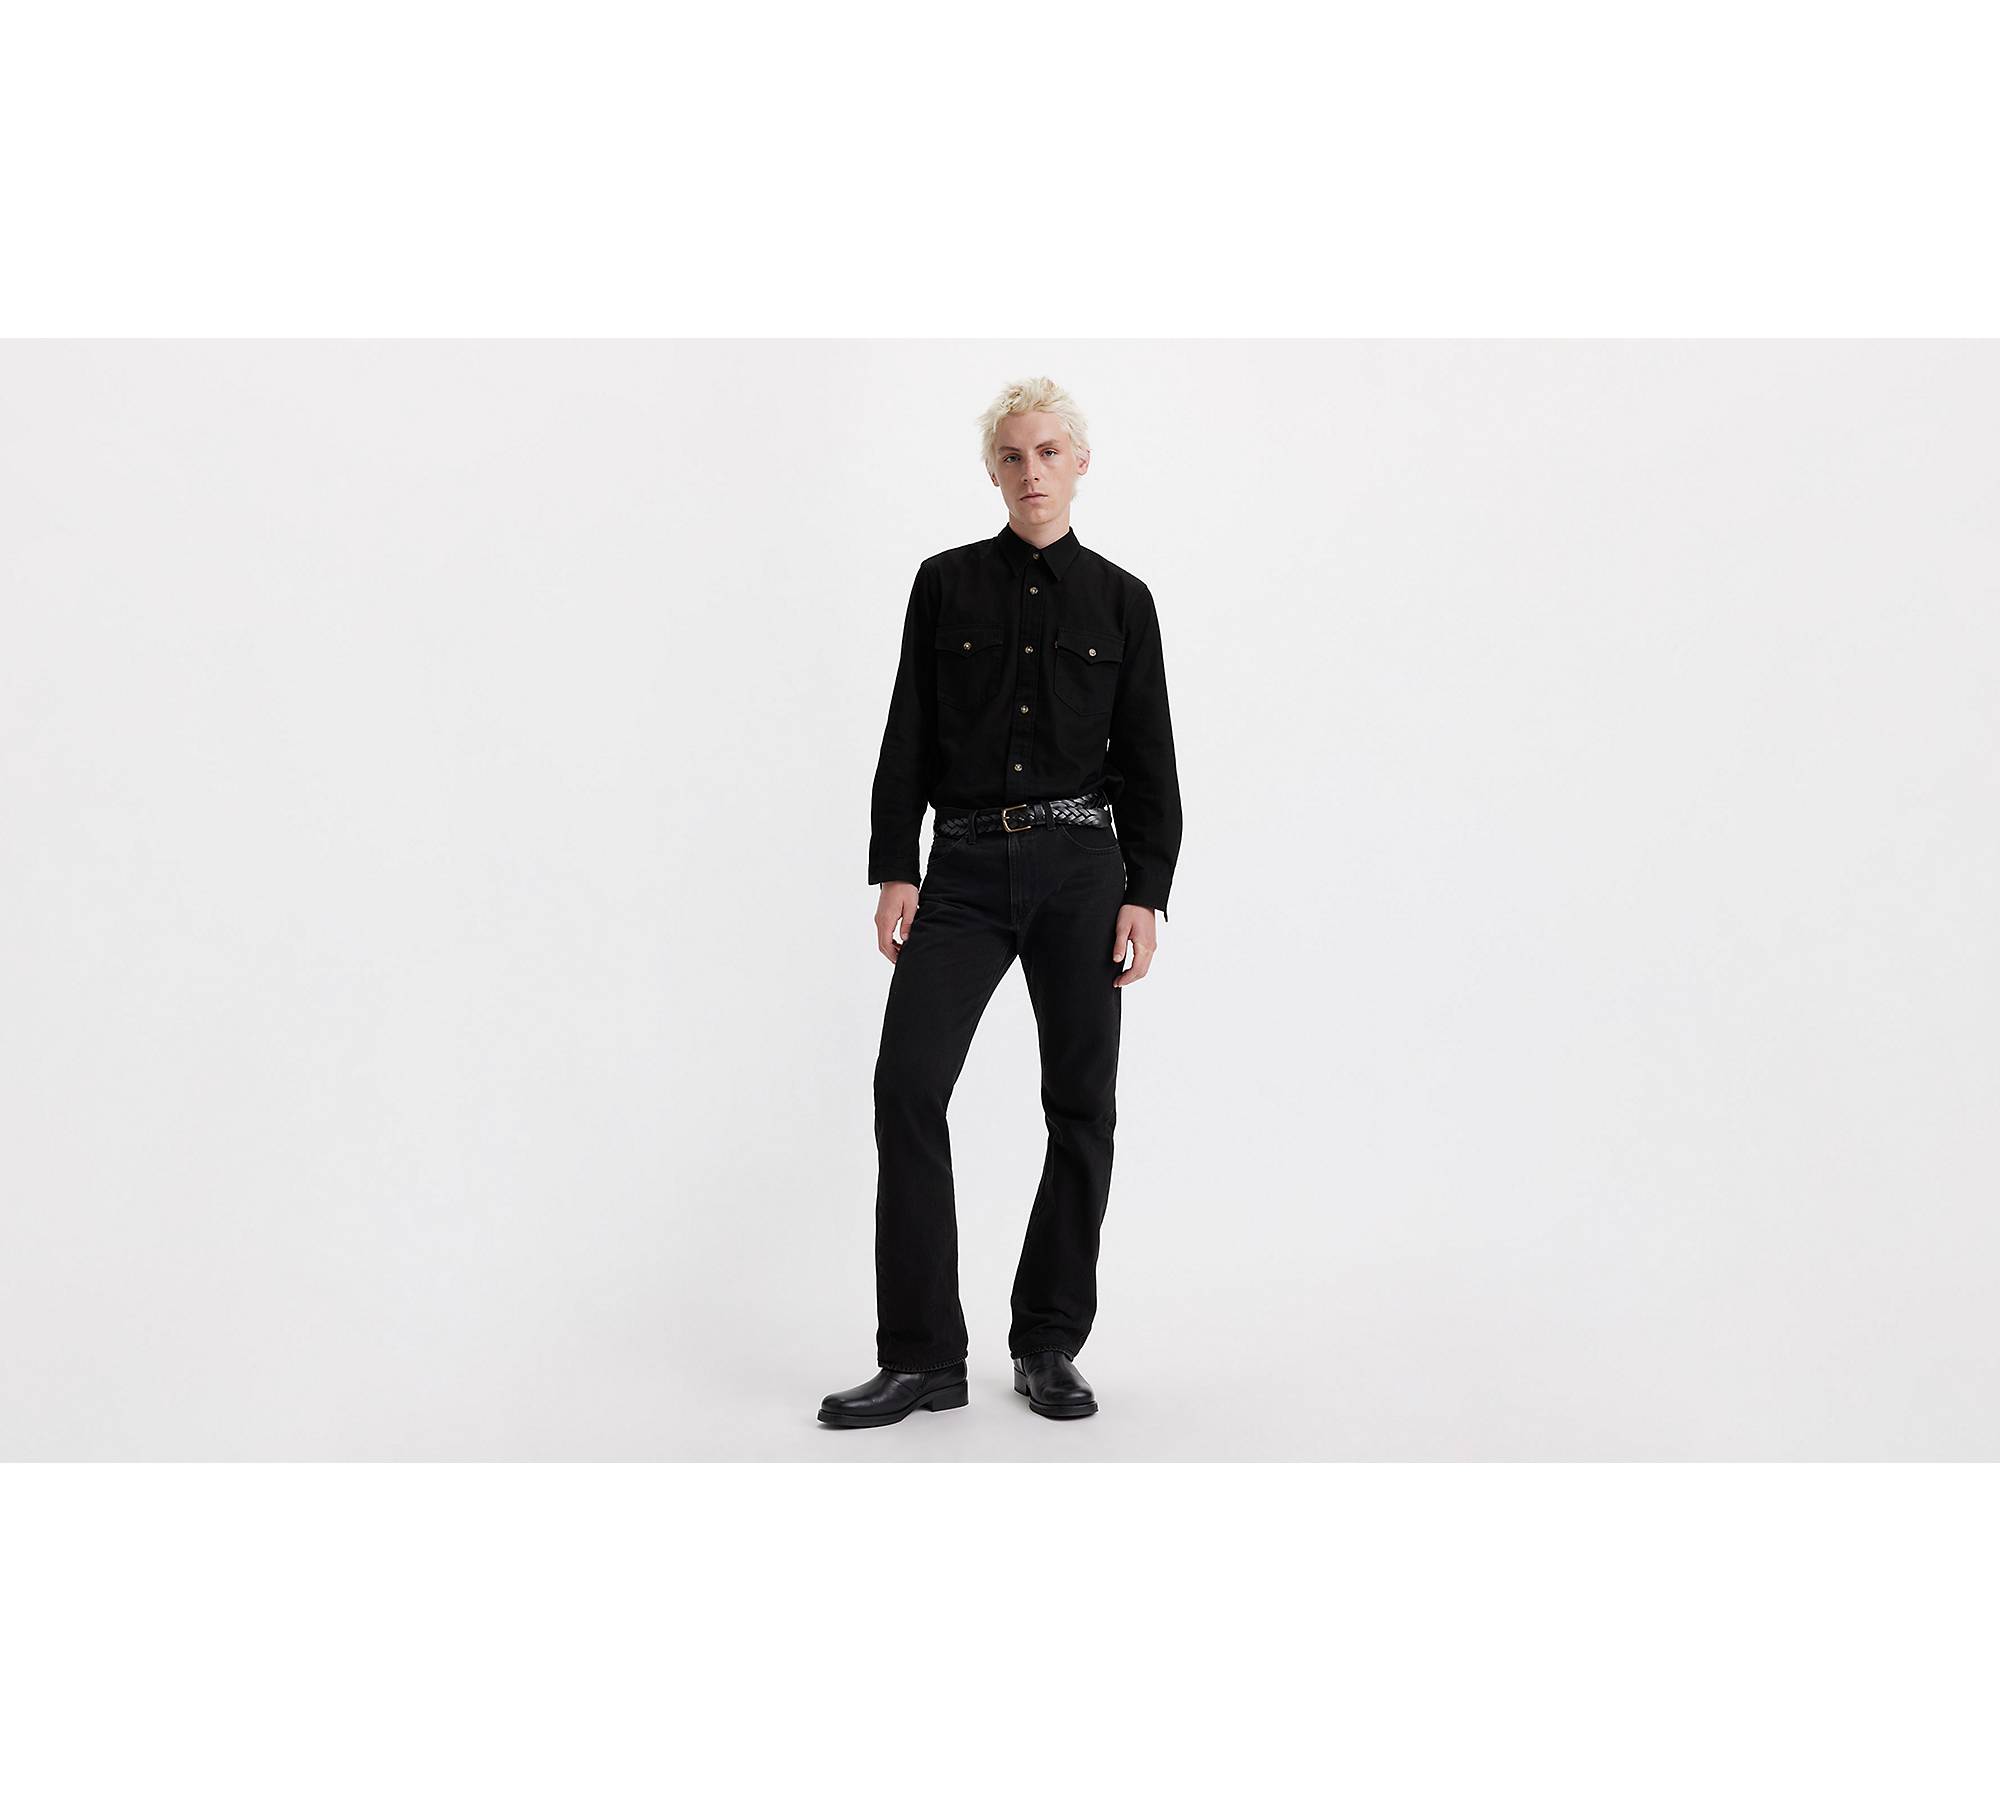 517™ Bootcut Men's Jeans - Black | Levi's® US